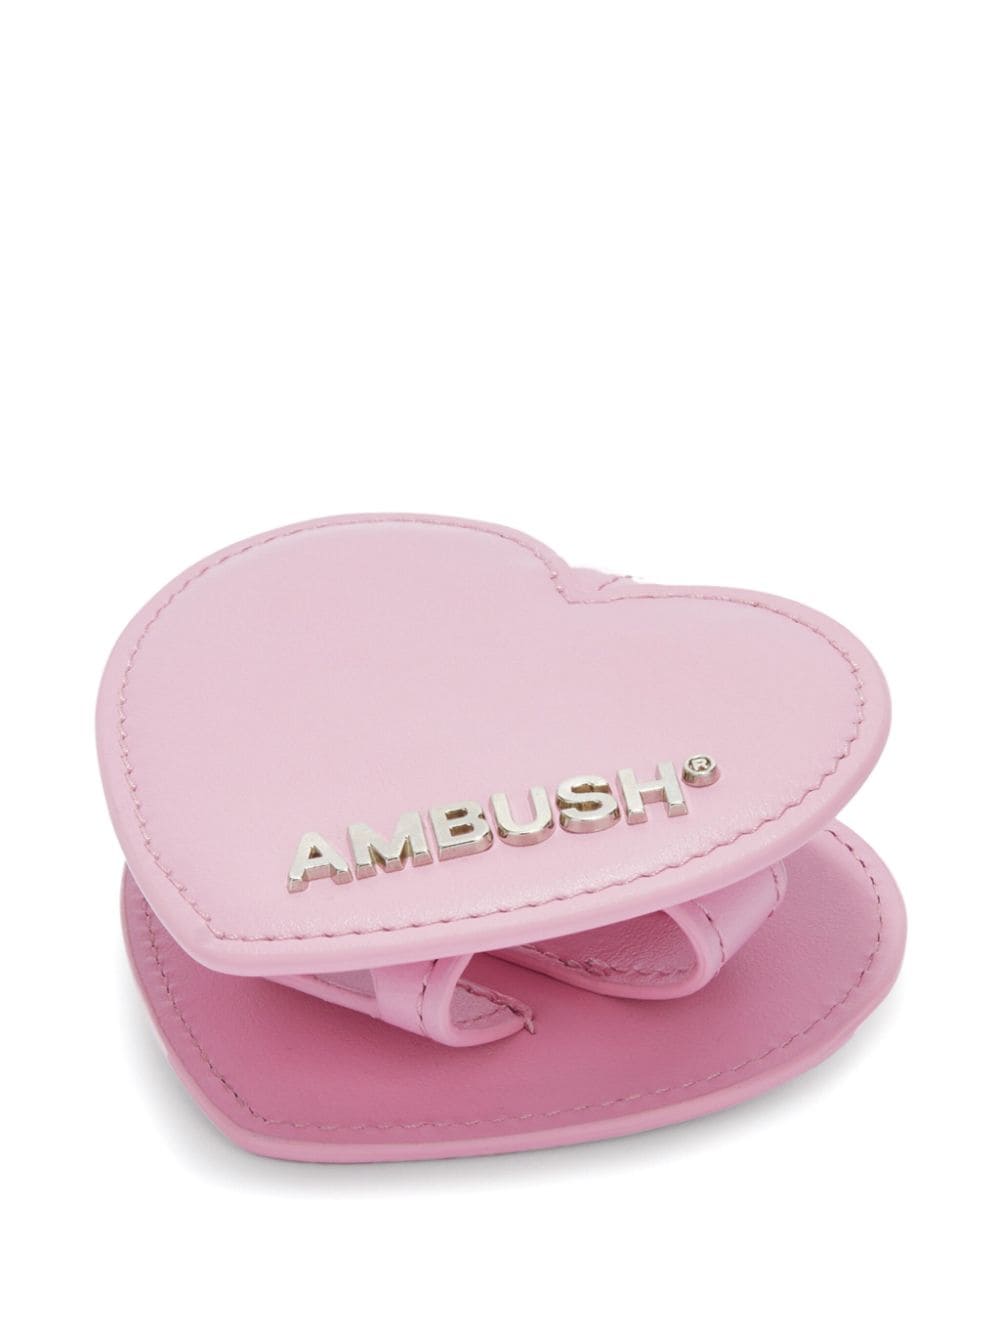 AMBUSH Heart leren AirPods hoesje - Roze